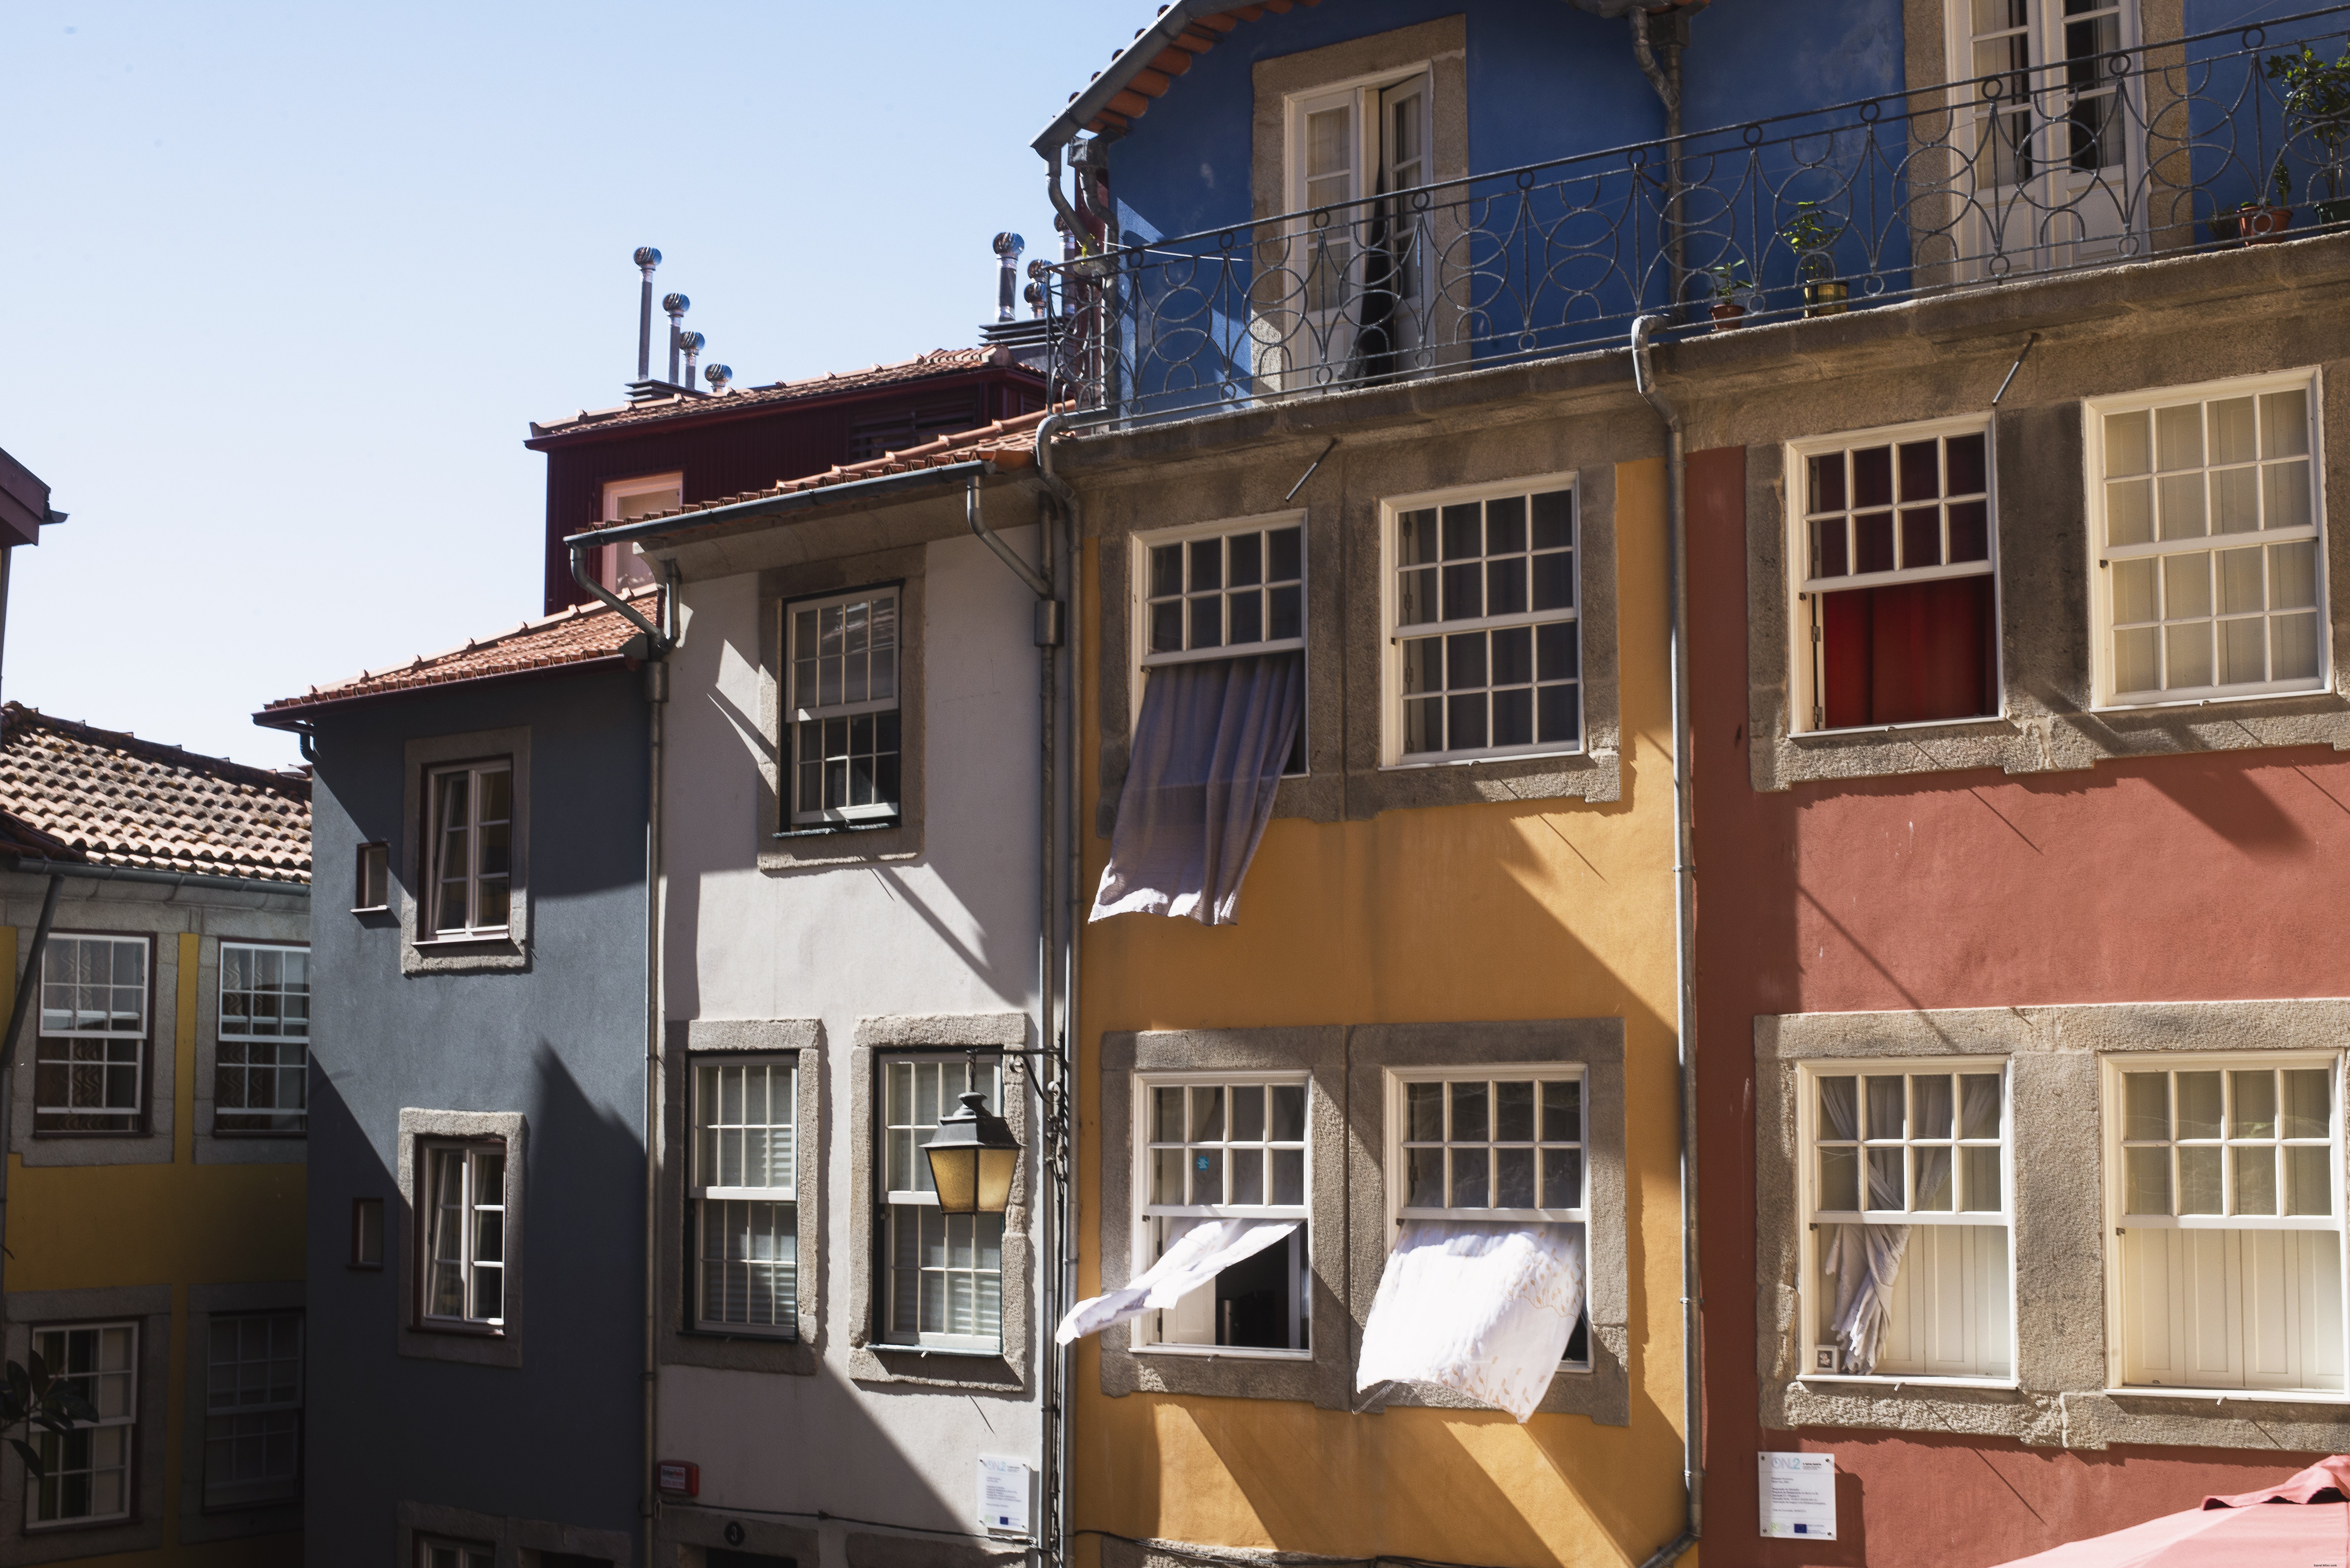 Cortinas passando pelas janelas desses edifícios coloridos - foto